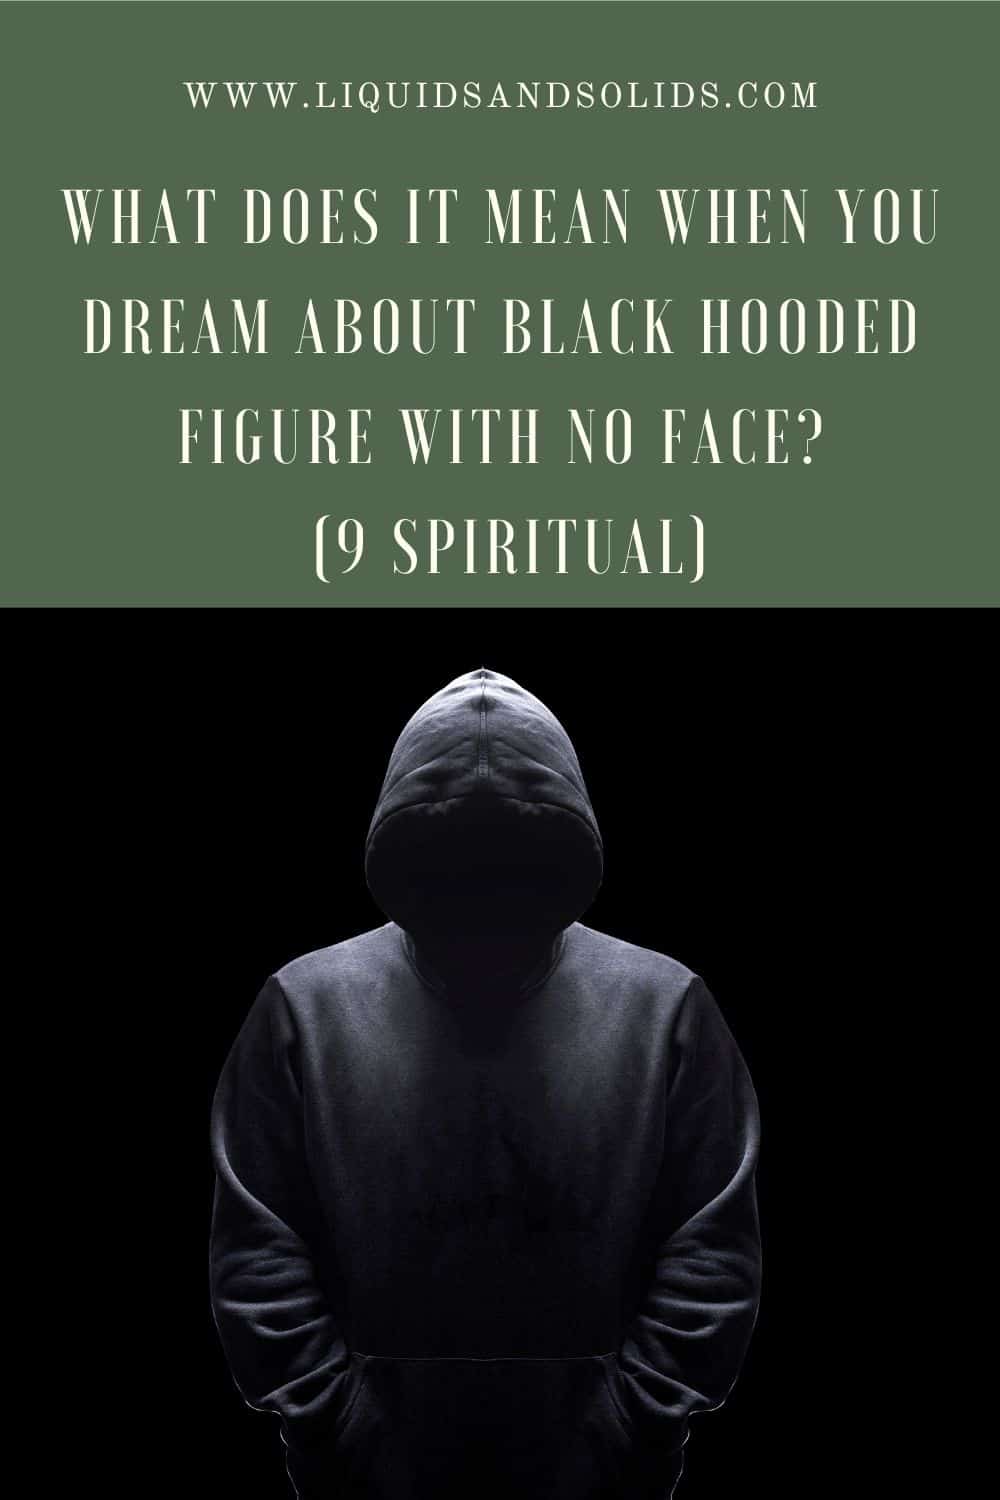  Drøm om sort hætteklædte figur uden ansigt? (9 spirituelle betydninger)